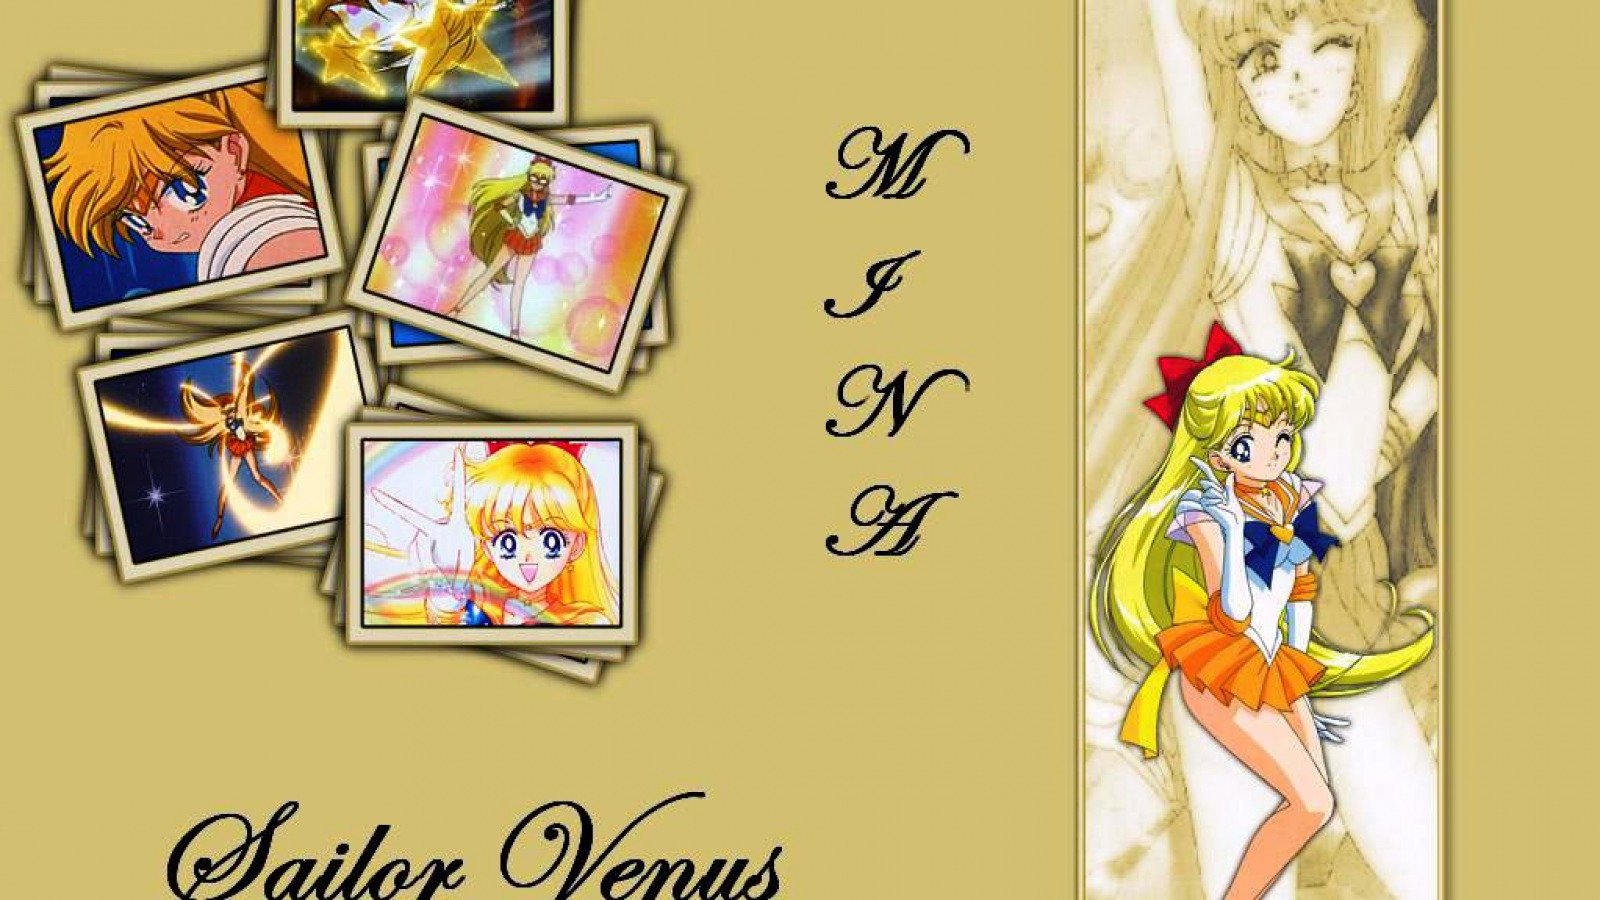 Anime Sailor Moon Image